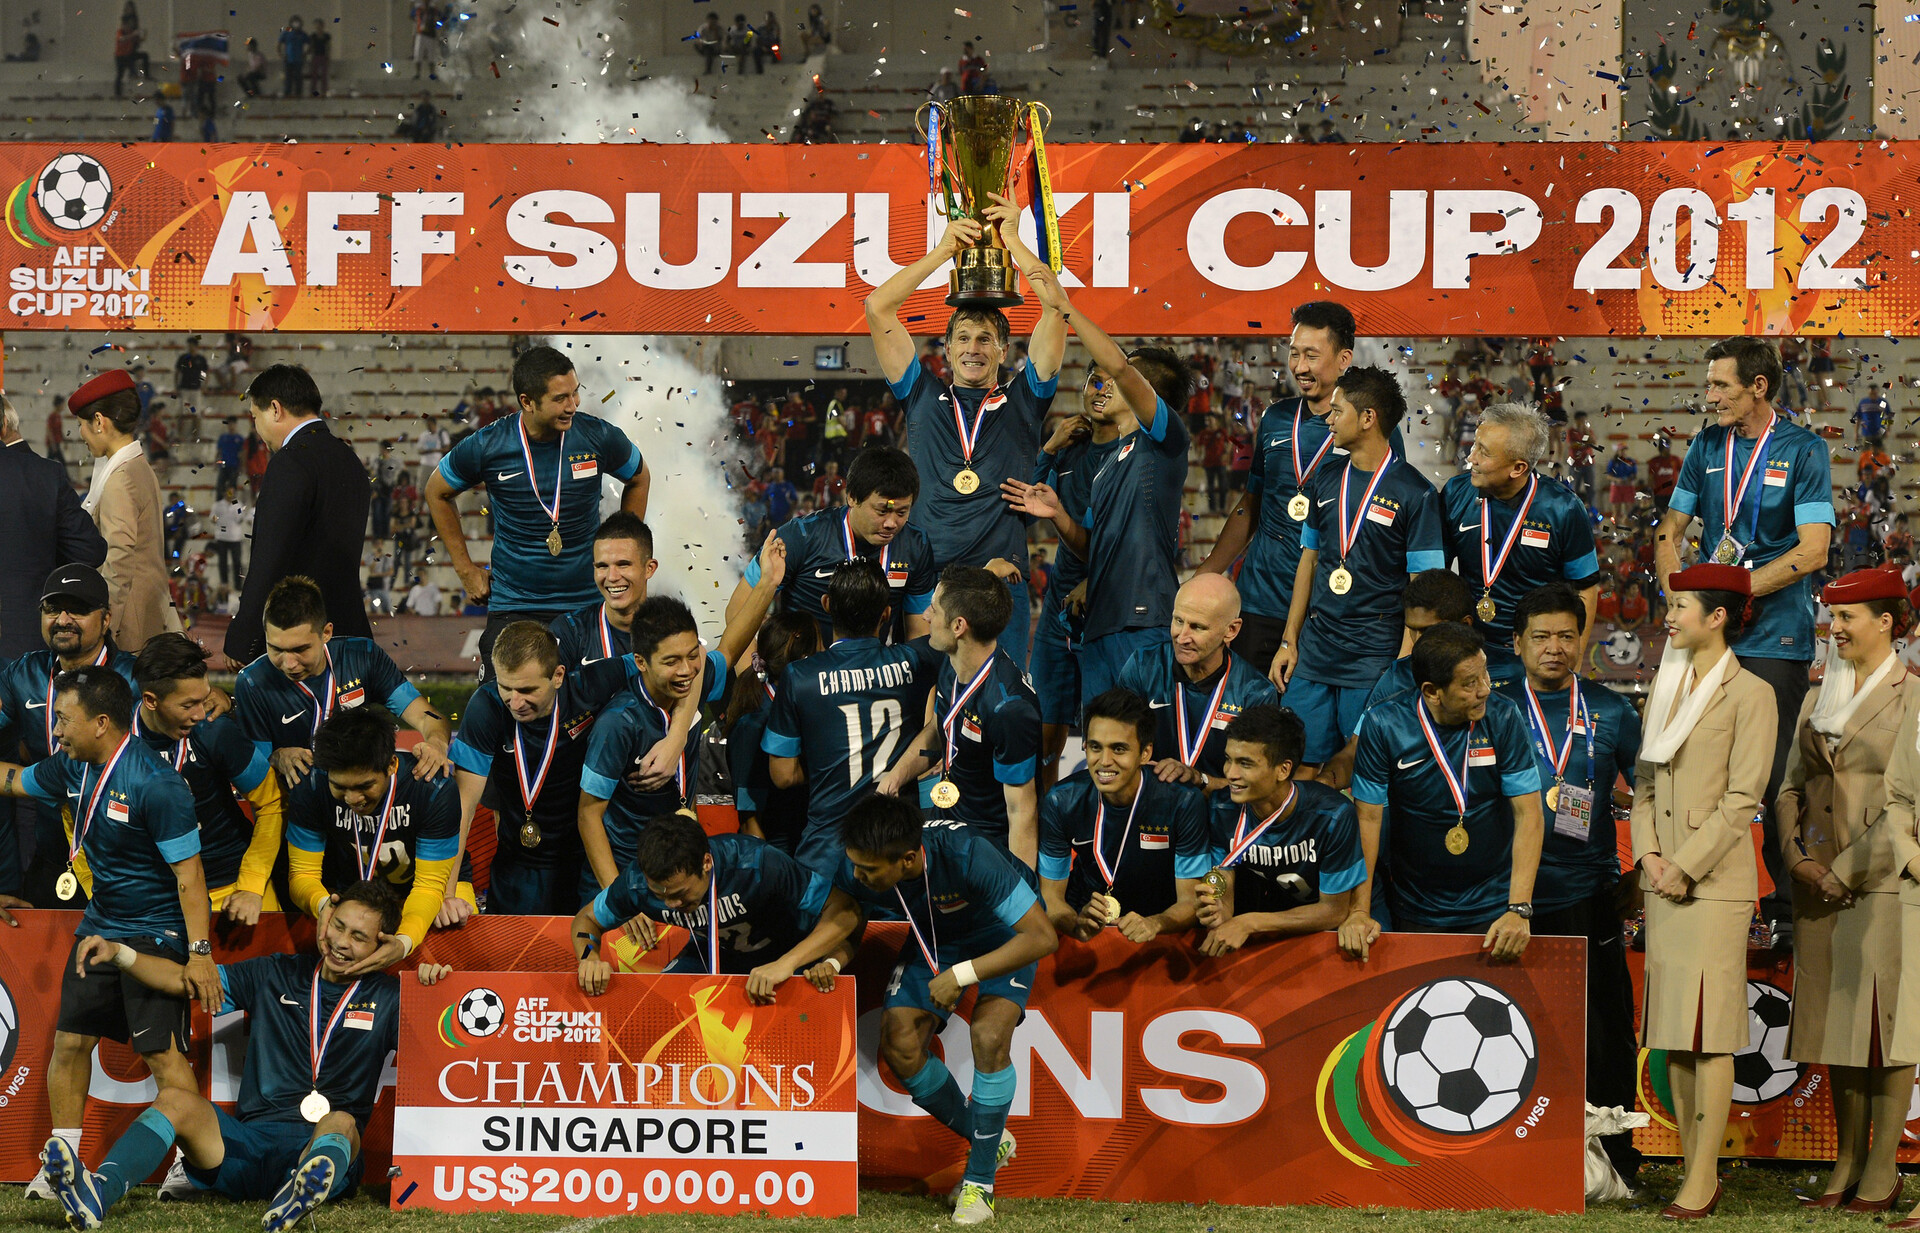 Suzuki Cup 2014. 2012 cup